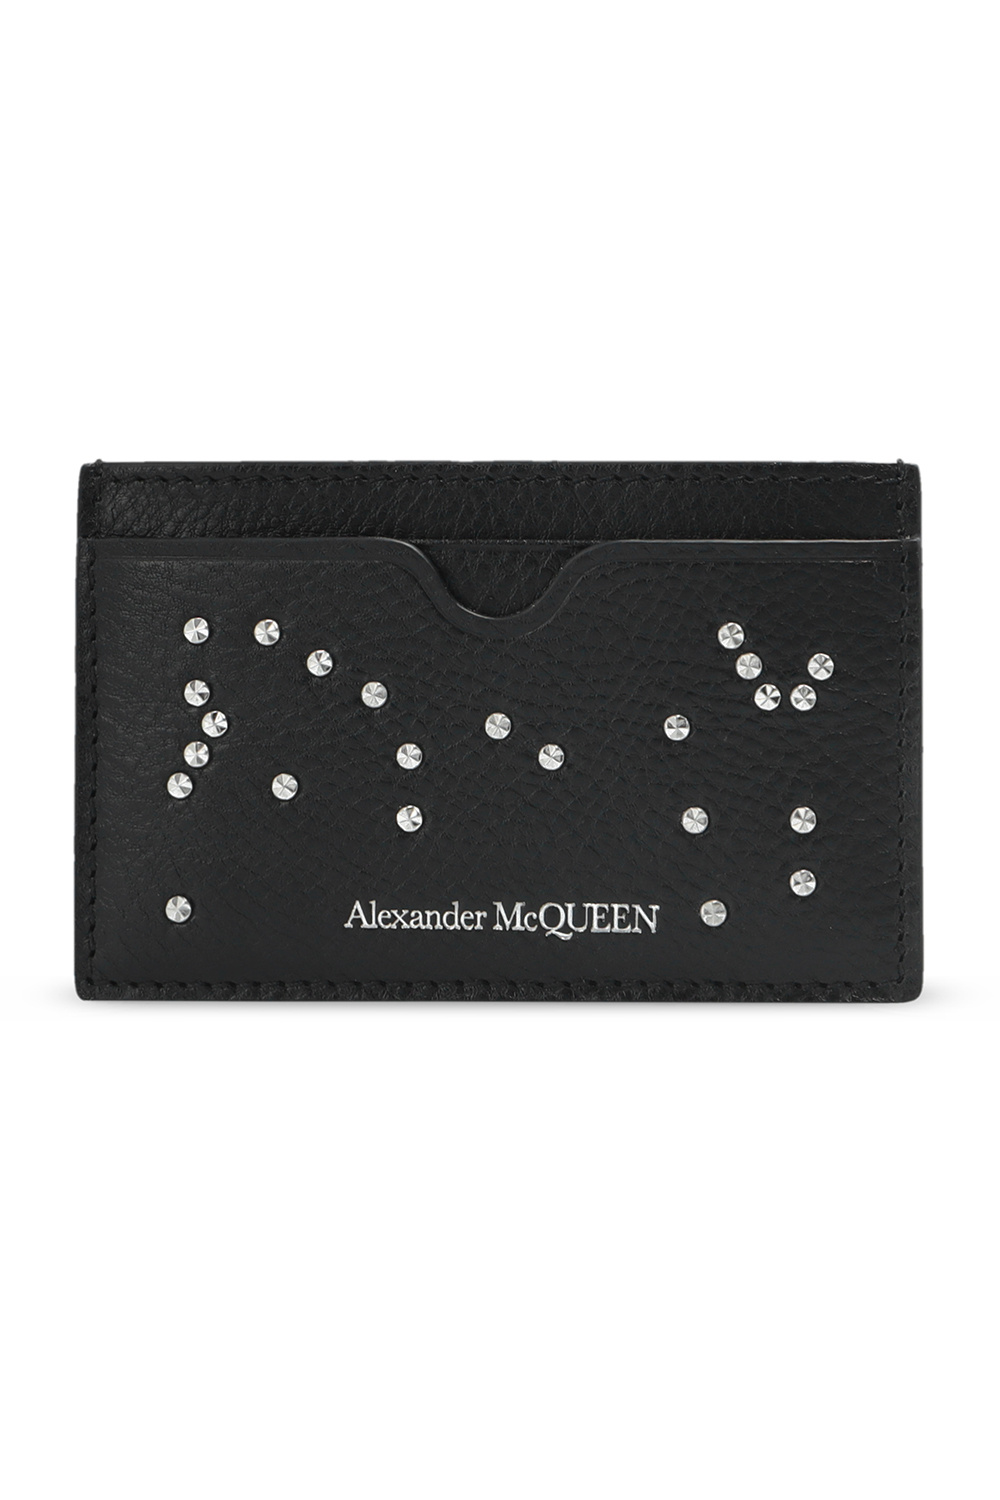 Alexander McQueen alexander mcqueen oversized brogues item